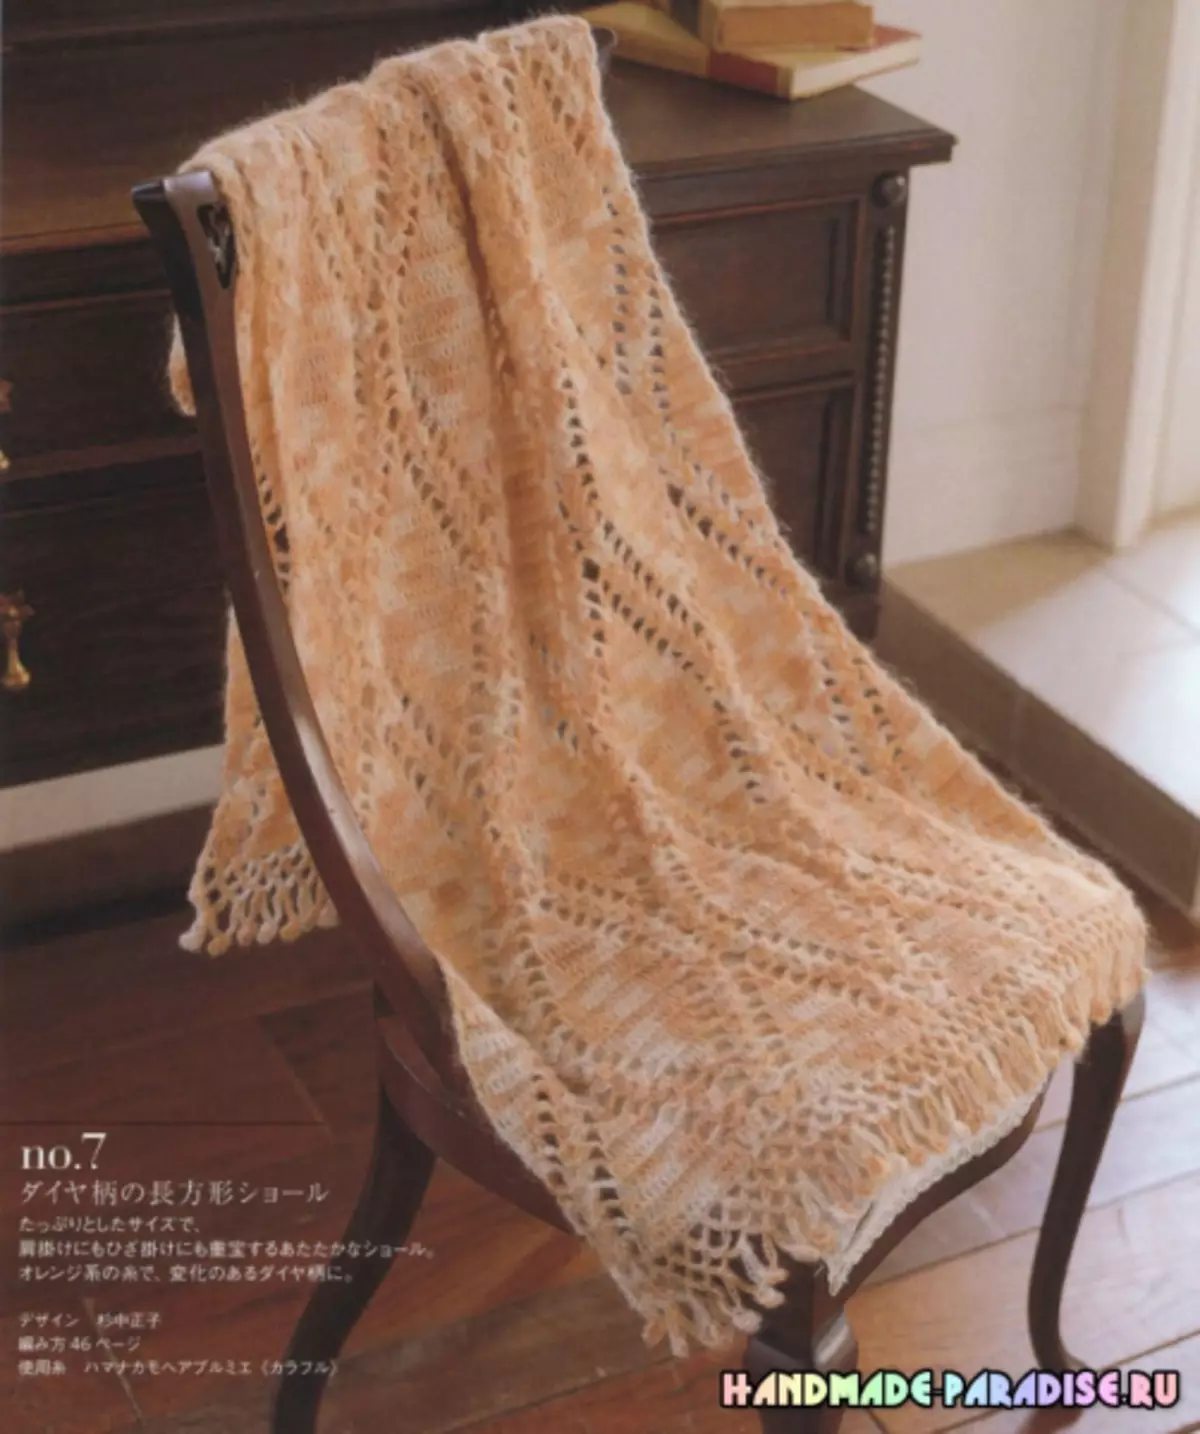 Elegantna pletenje kvačkanje. Japonska revija s shemami